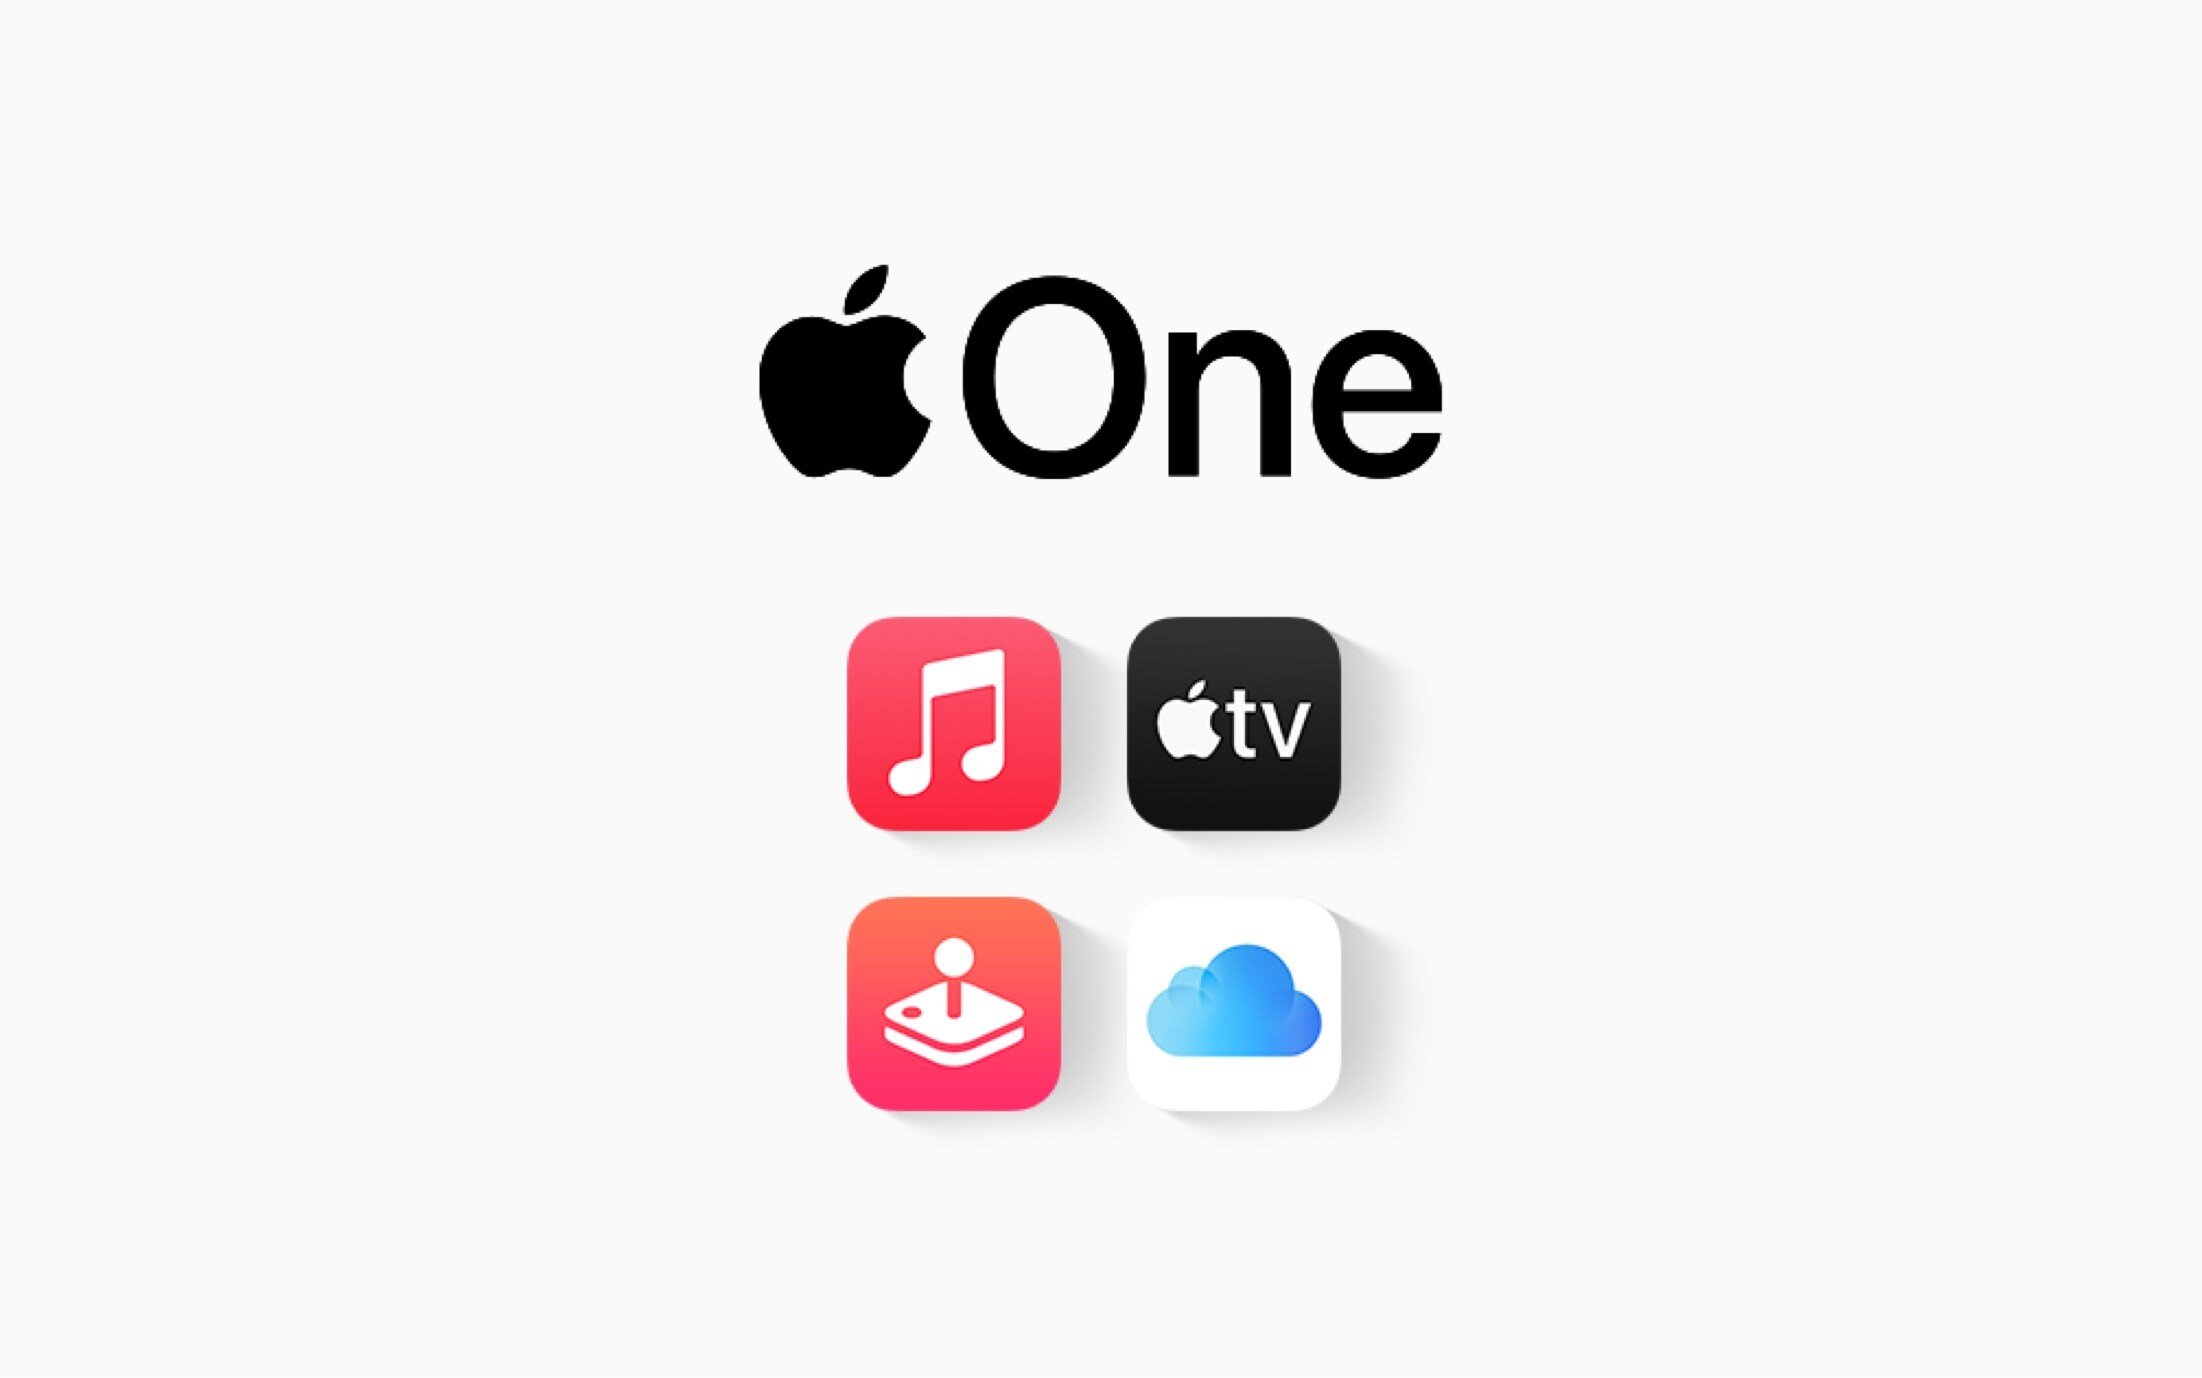 I servizi inclusi con Apple One